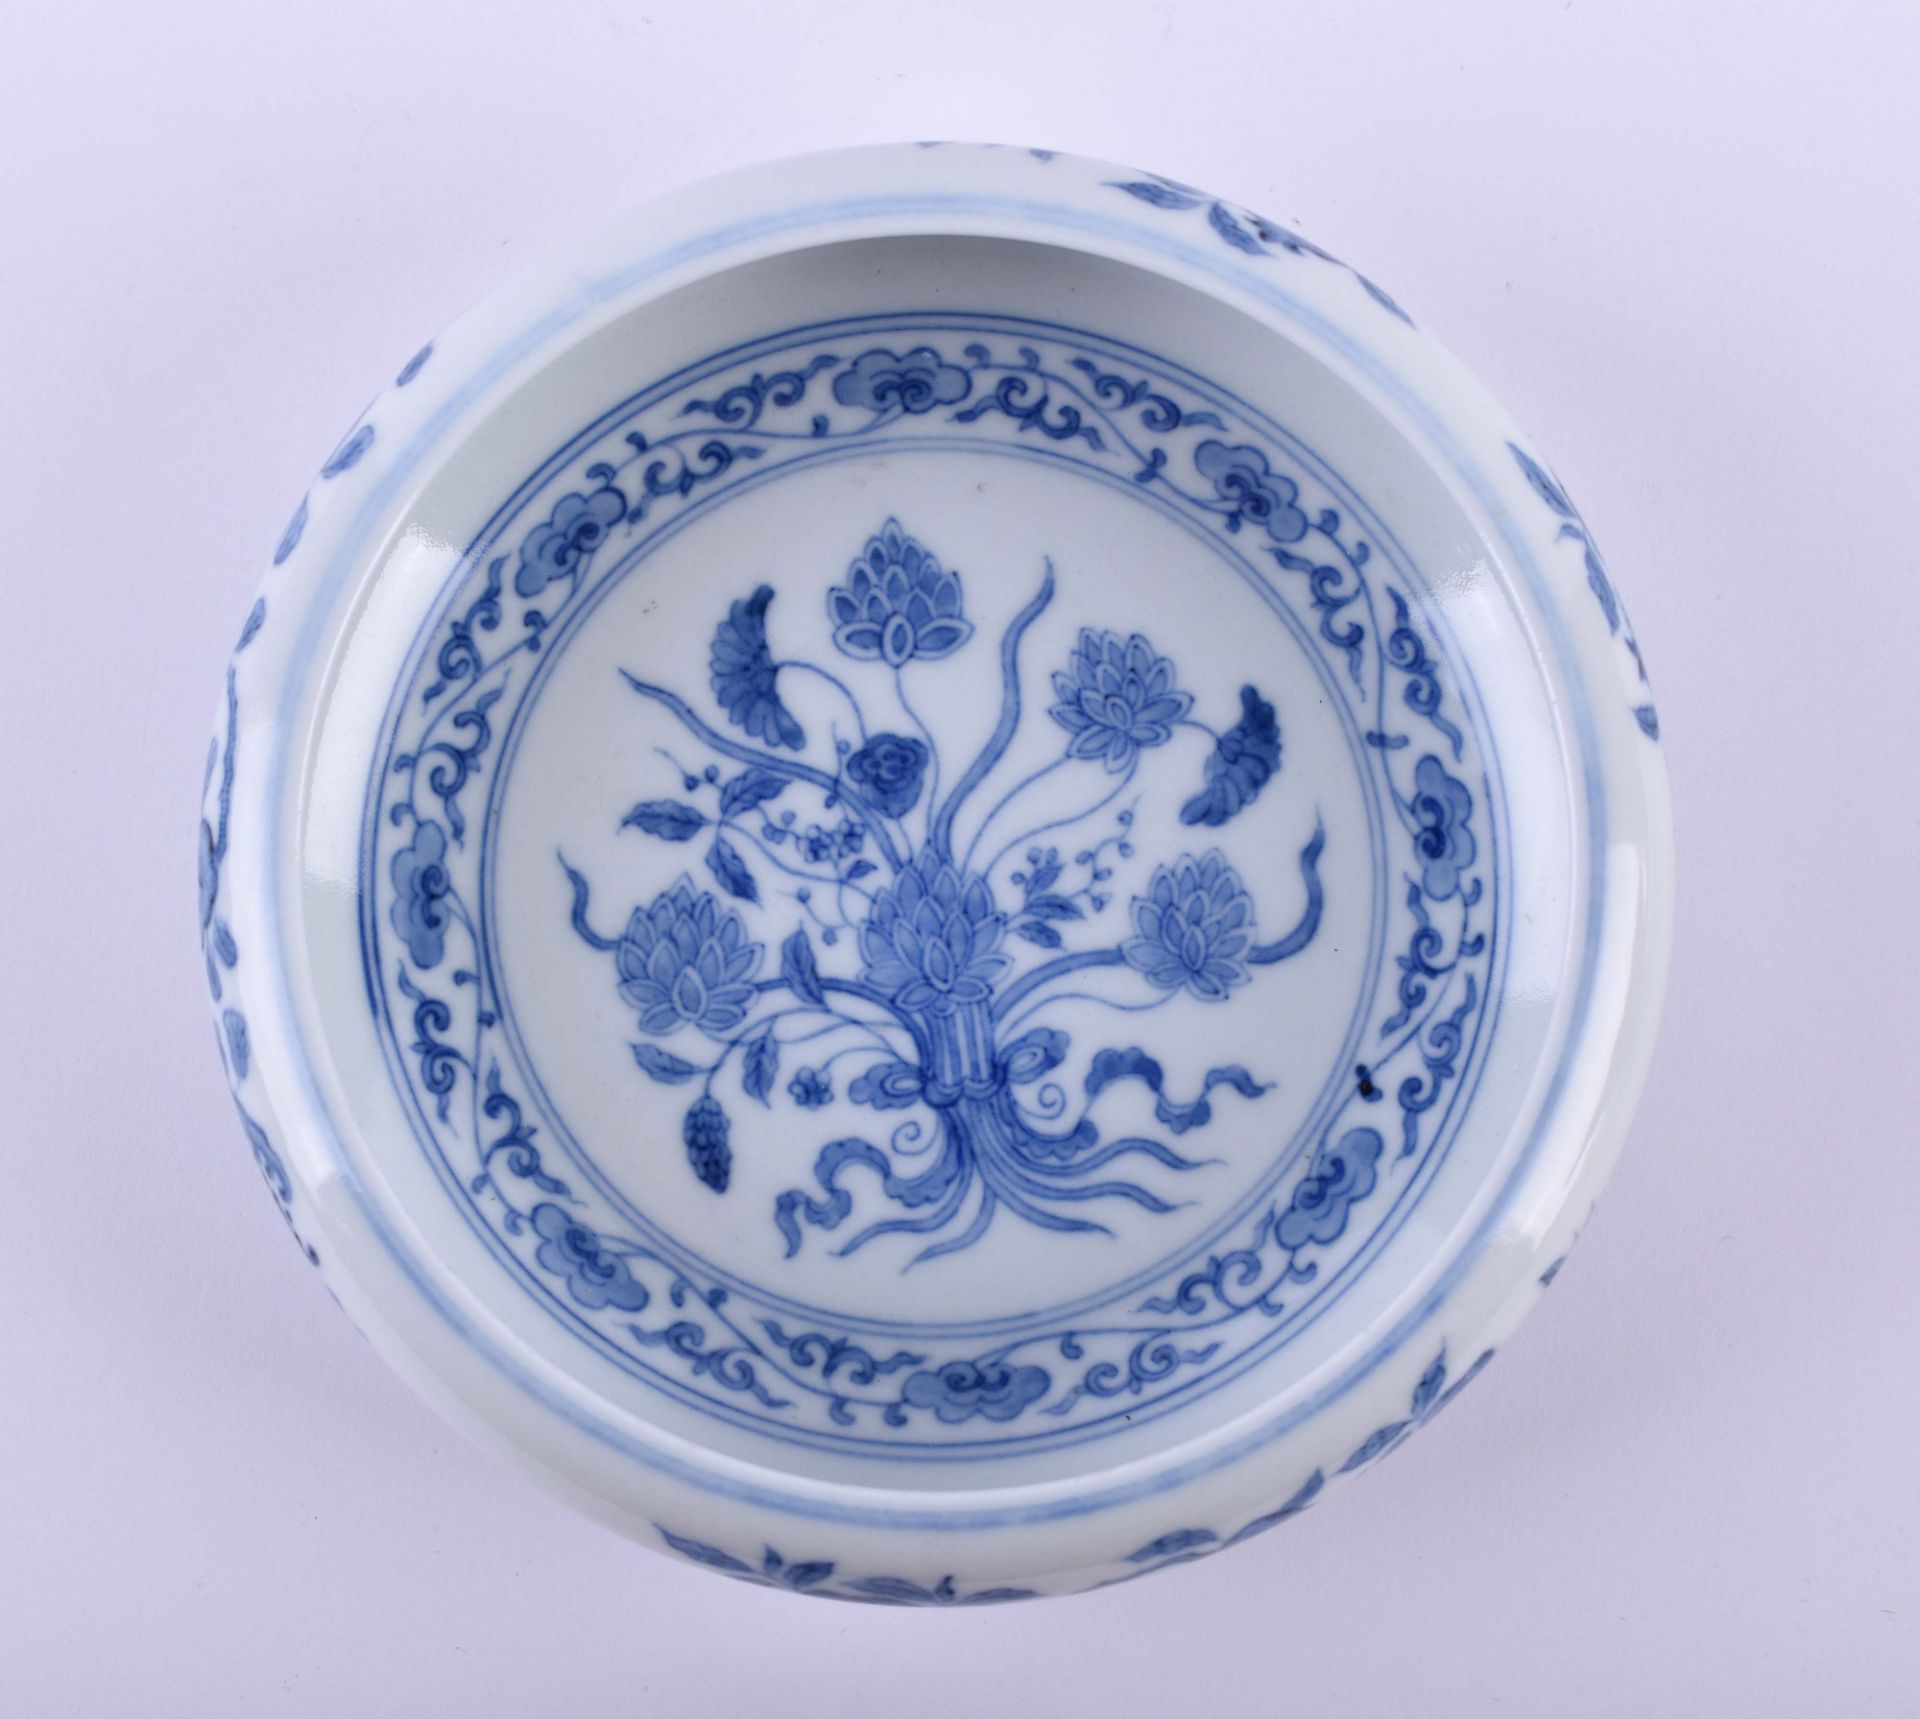  Bowl China Qing dynasty - Image 7 of 10